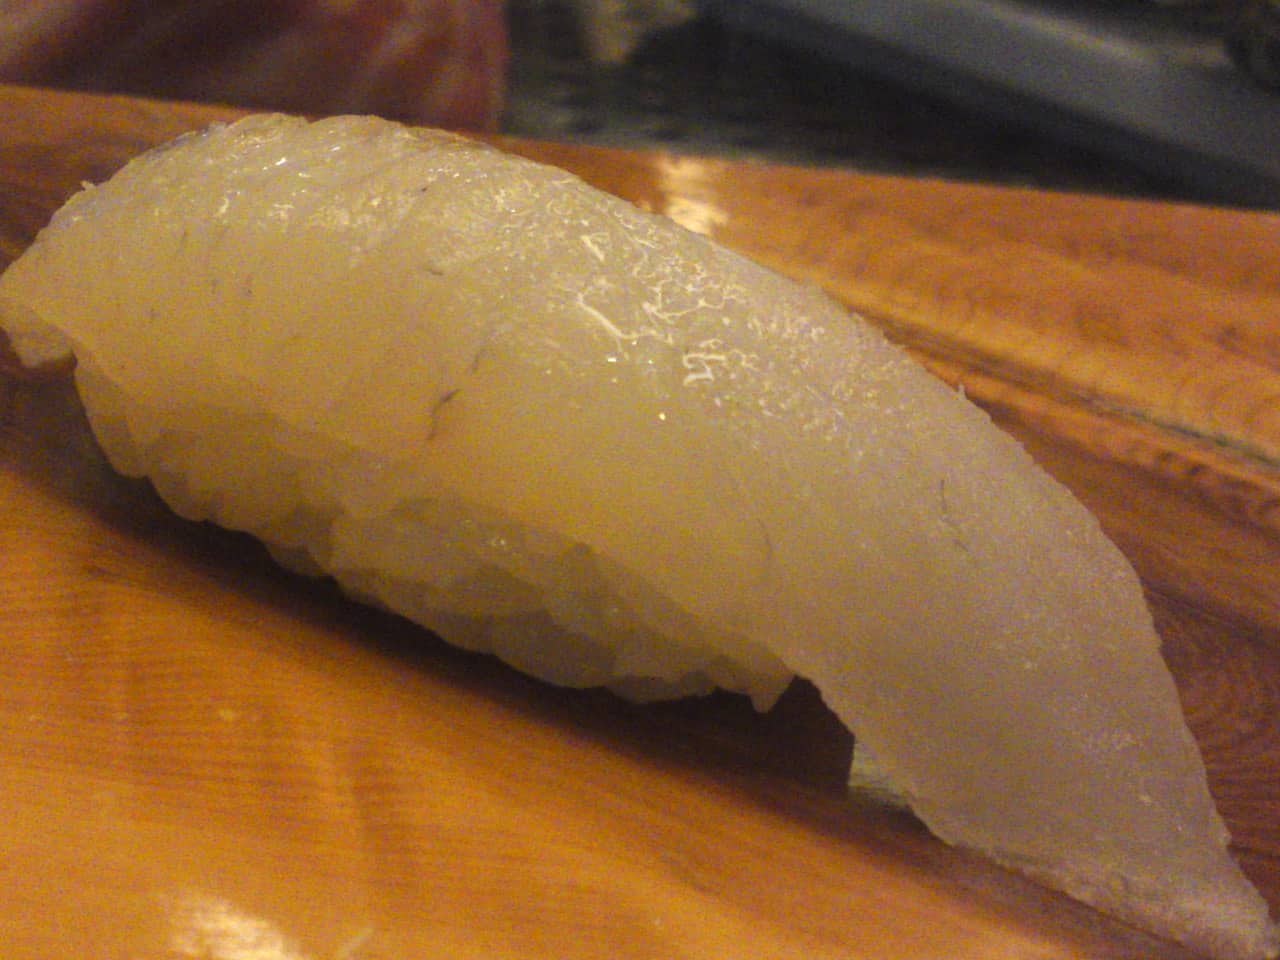 Introduction au sushis et sashimis, spécialités culinaires japonaises.